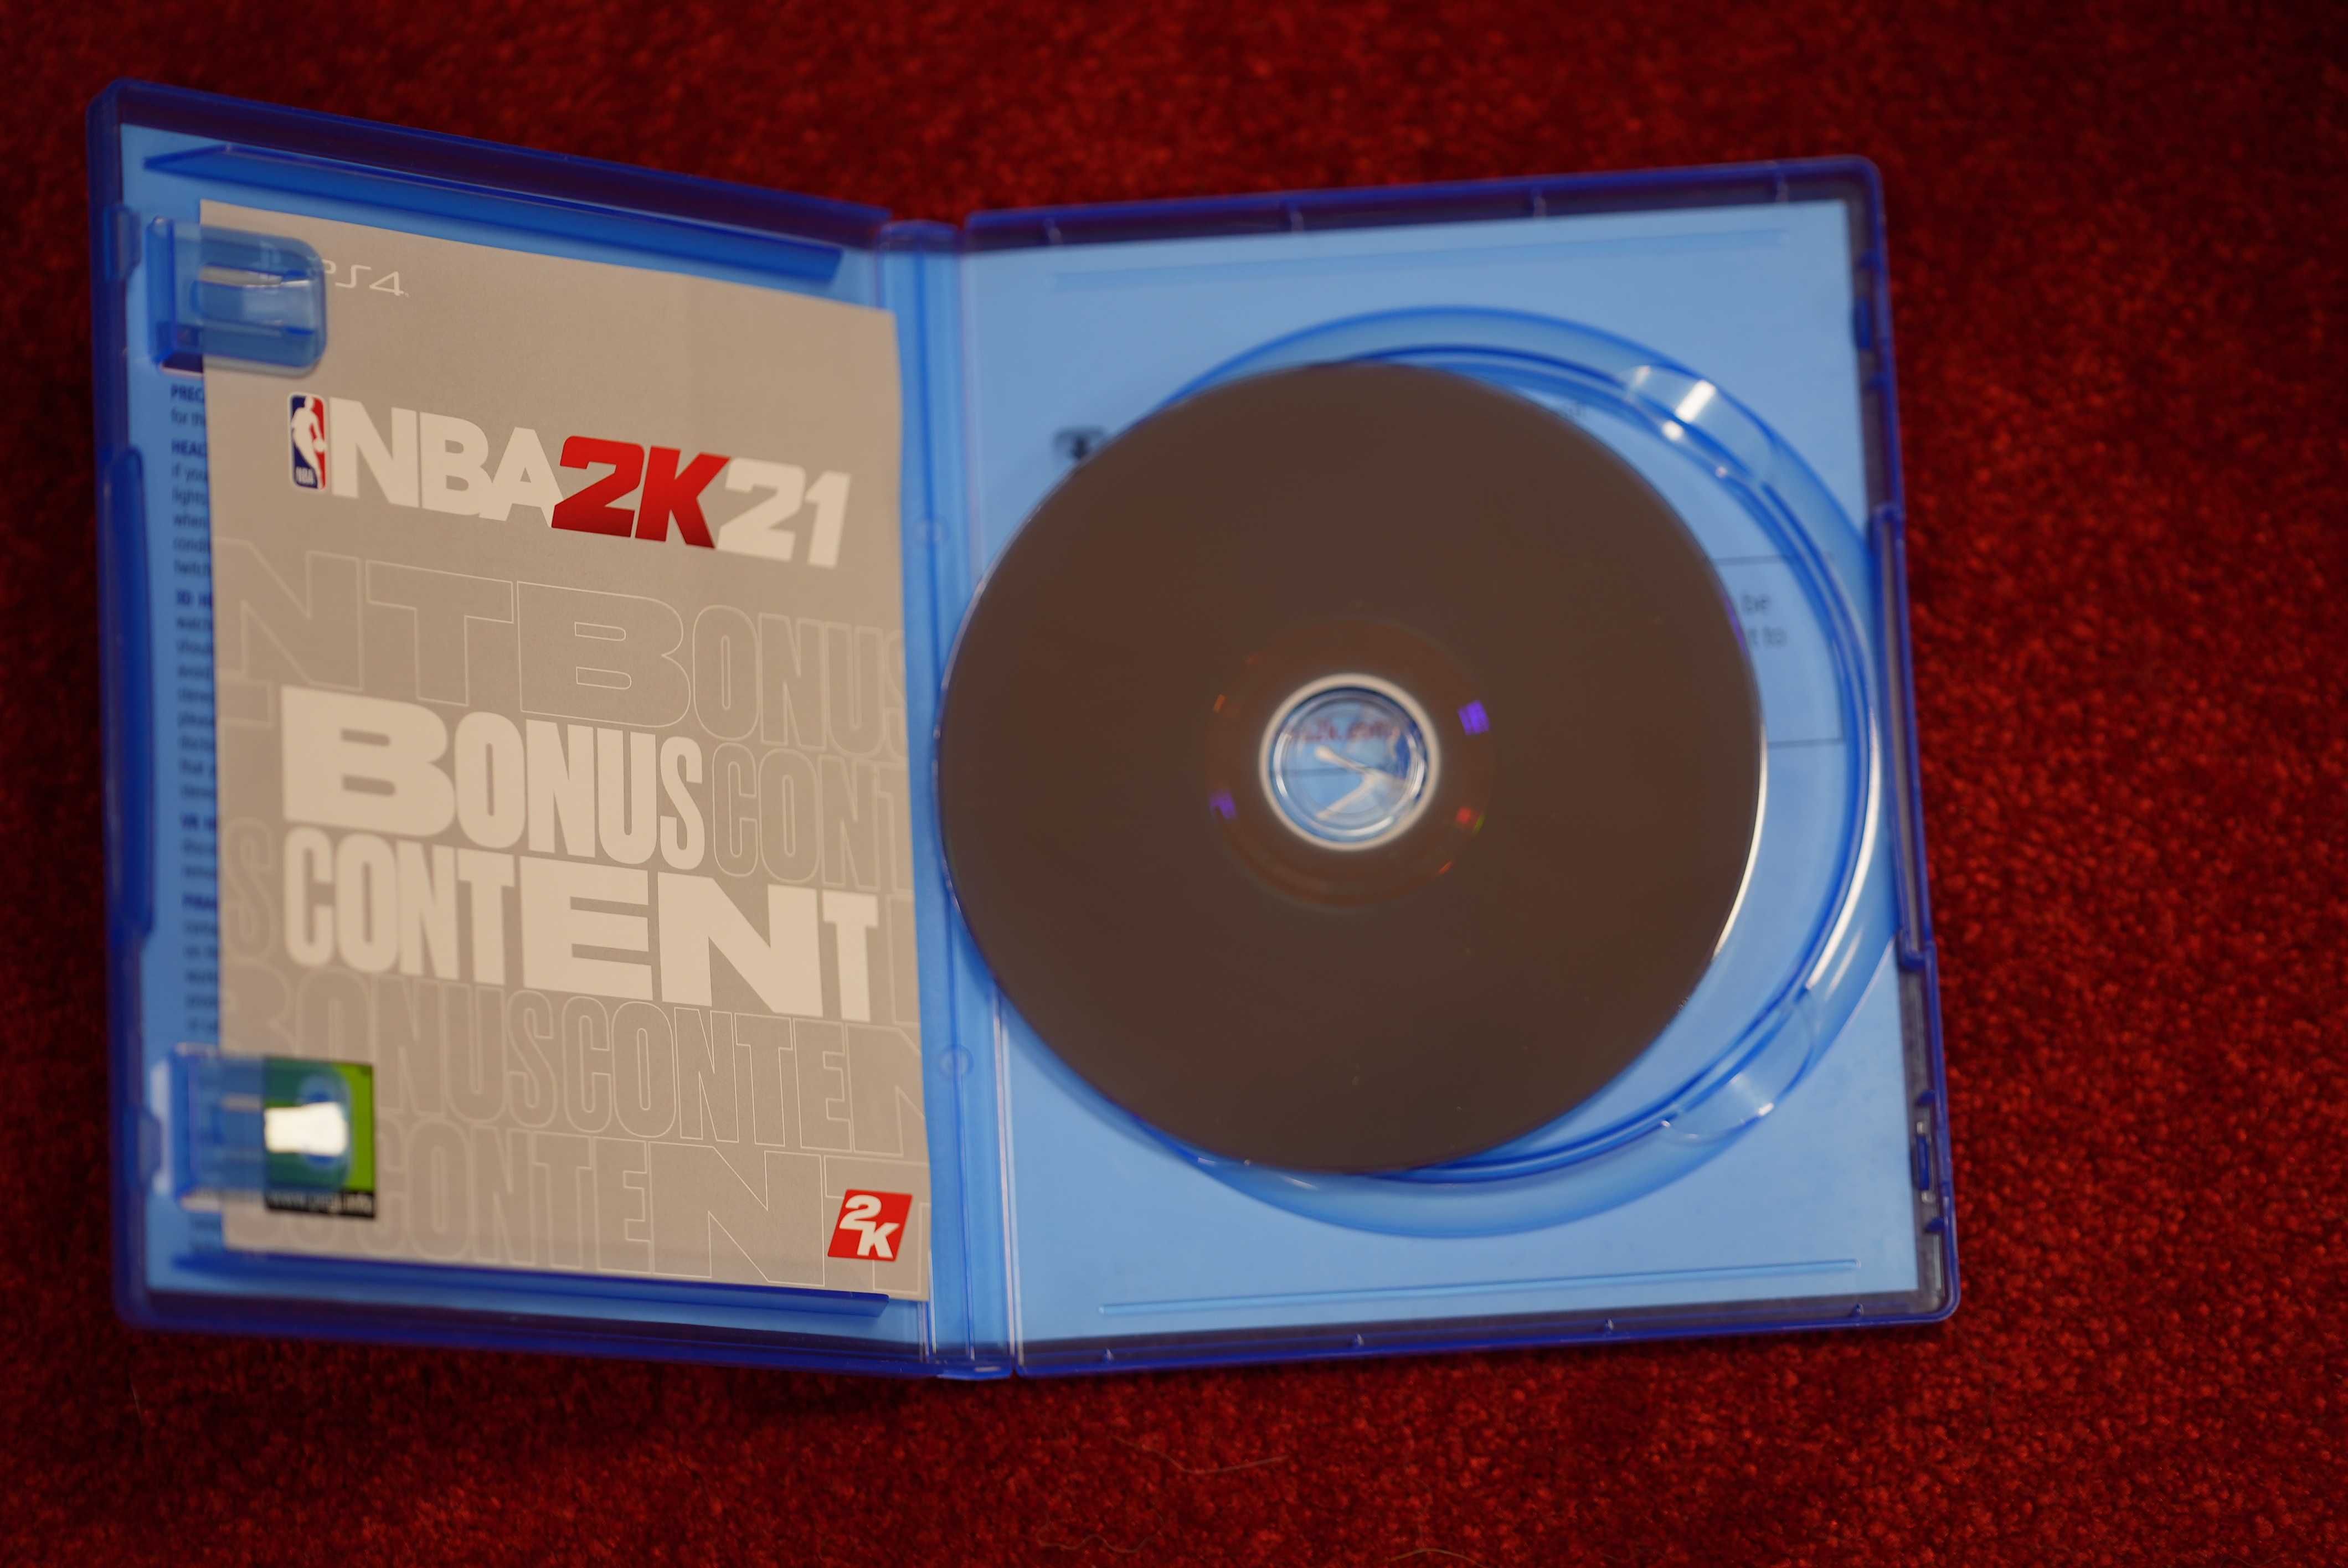 NBA 2K21 gra na PS4 Gry PlayStation dobre ceny 2021